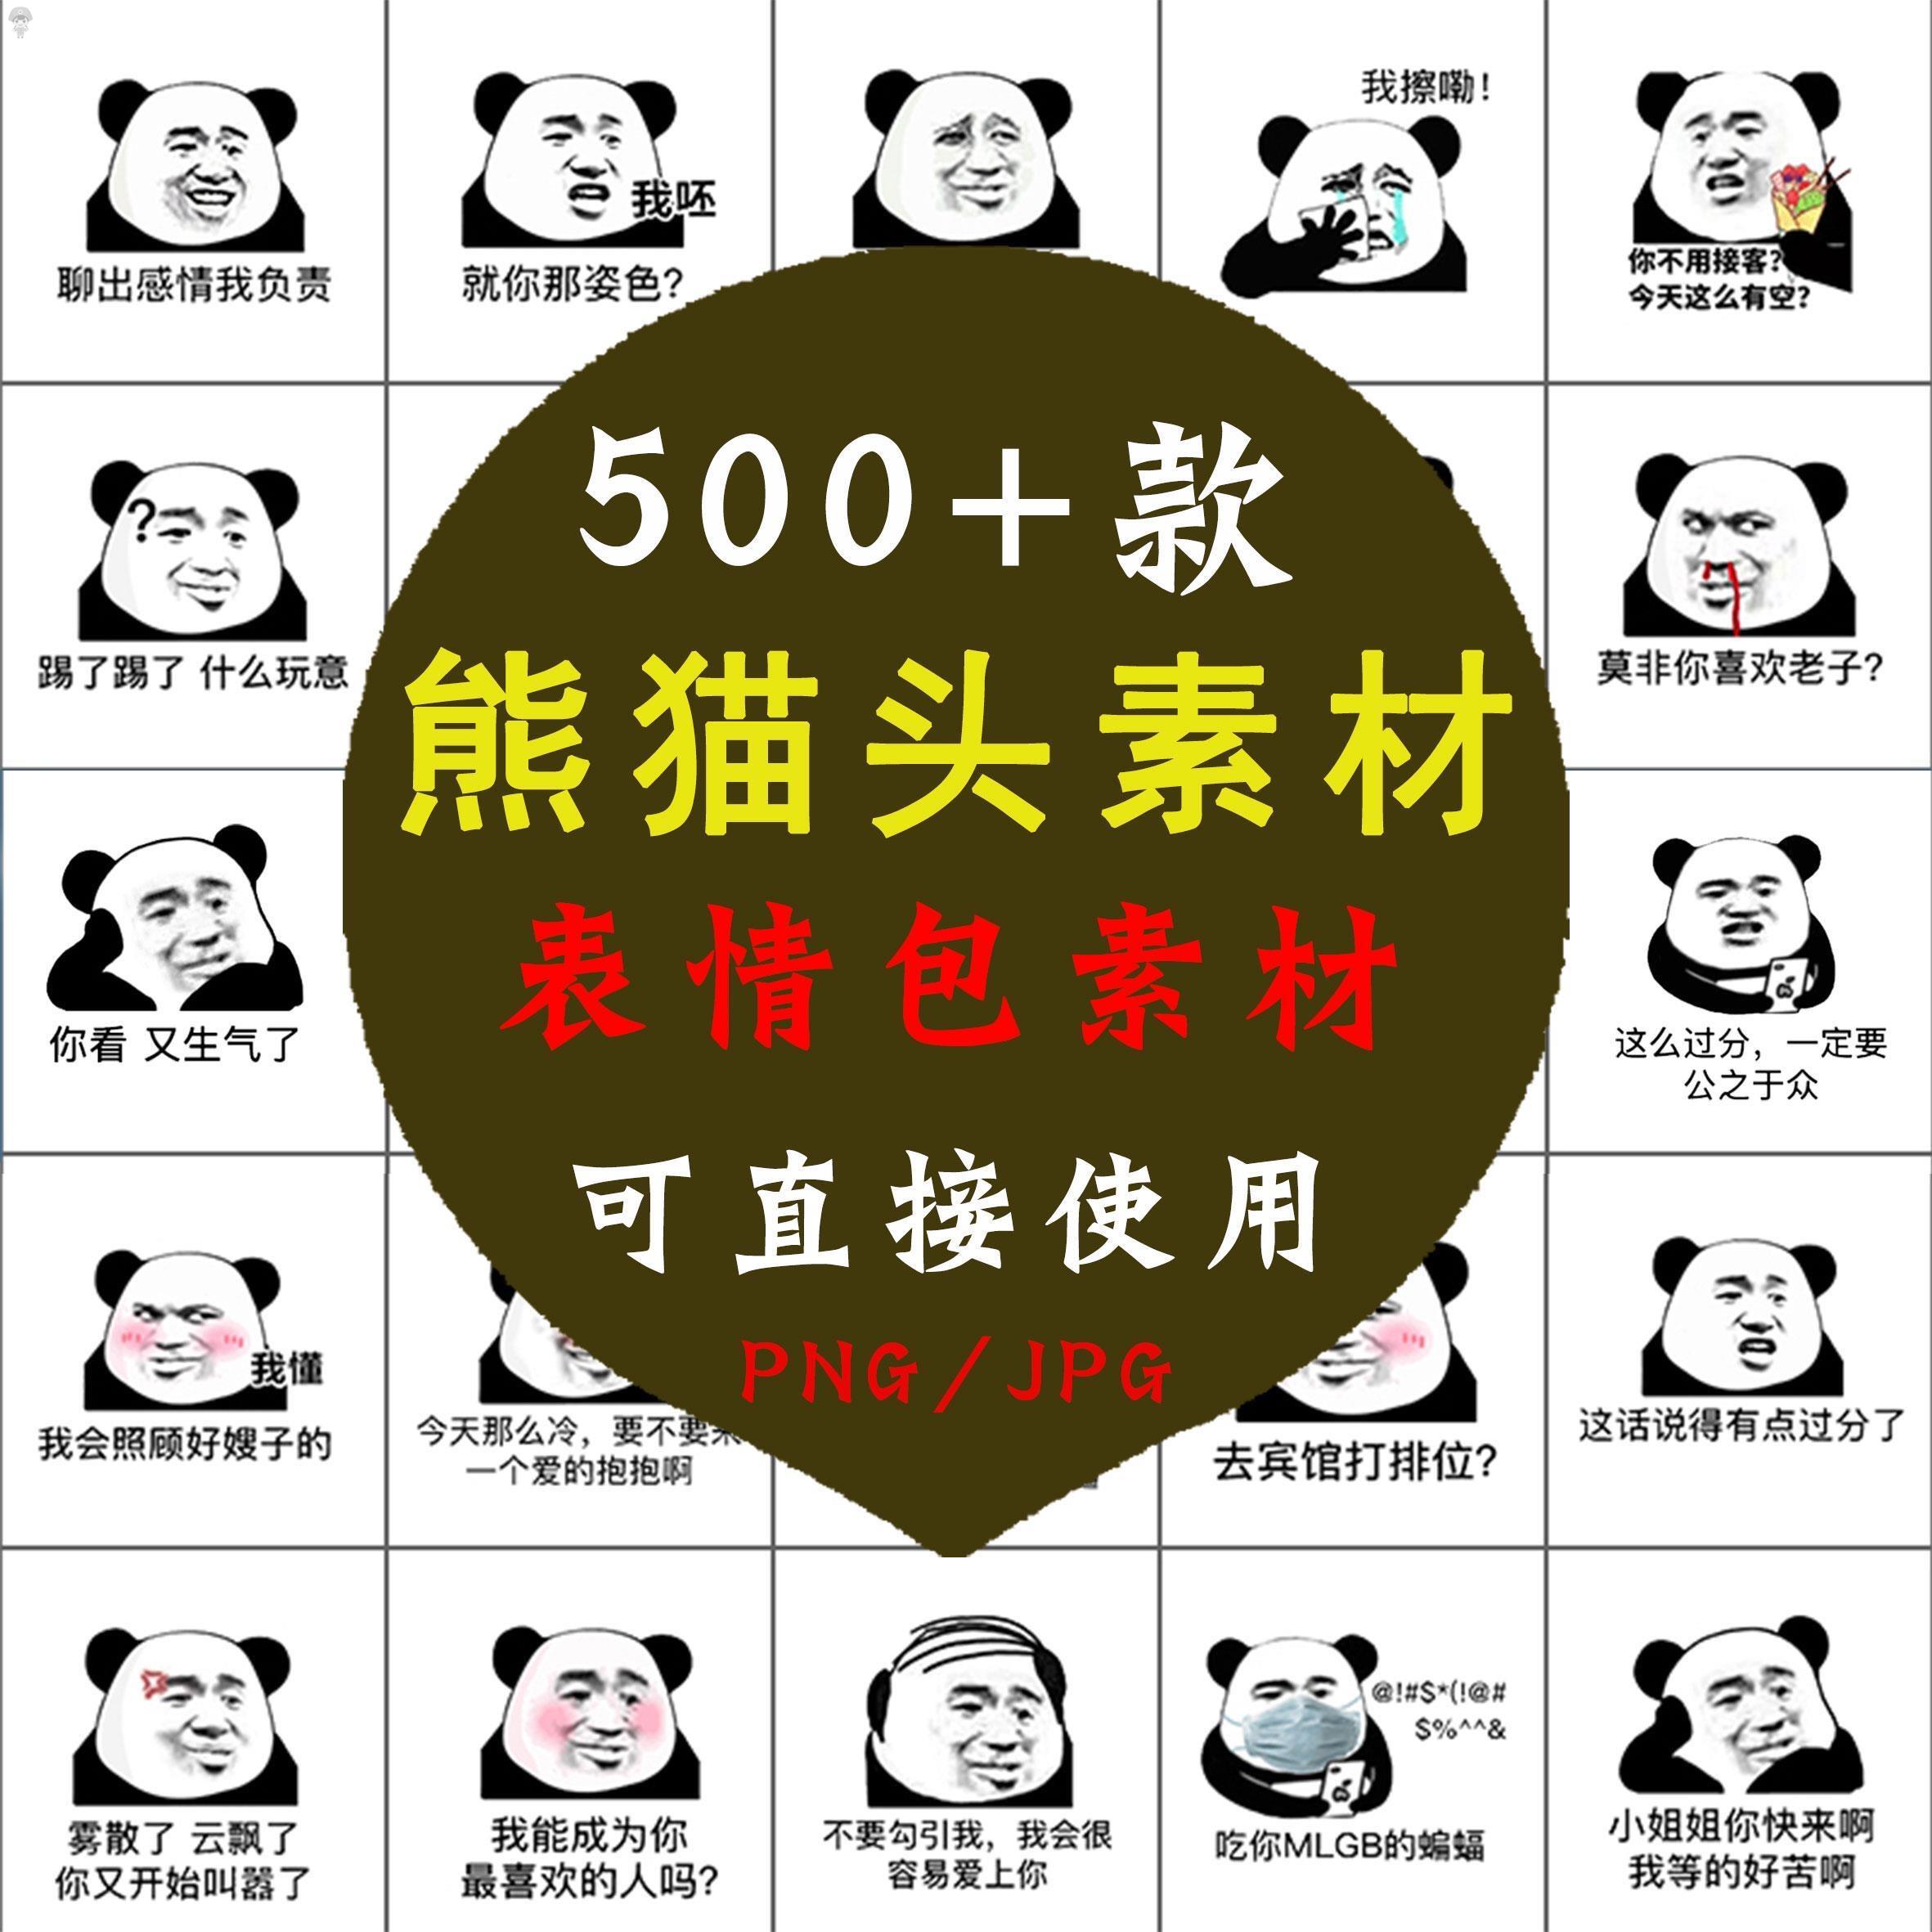 熊猫头像斗图表情专用图片包 静态搞笑幽默蘑菇头熊猫头素材聊天